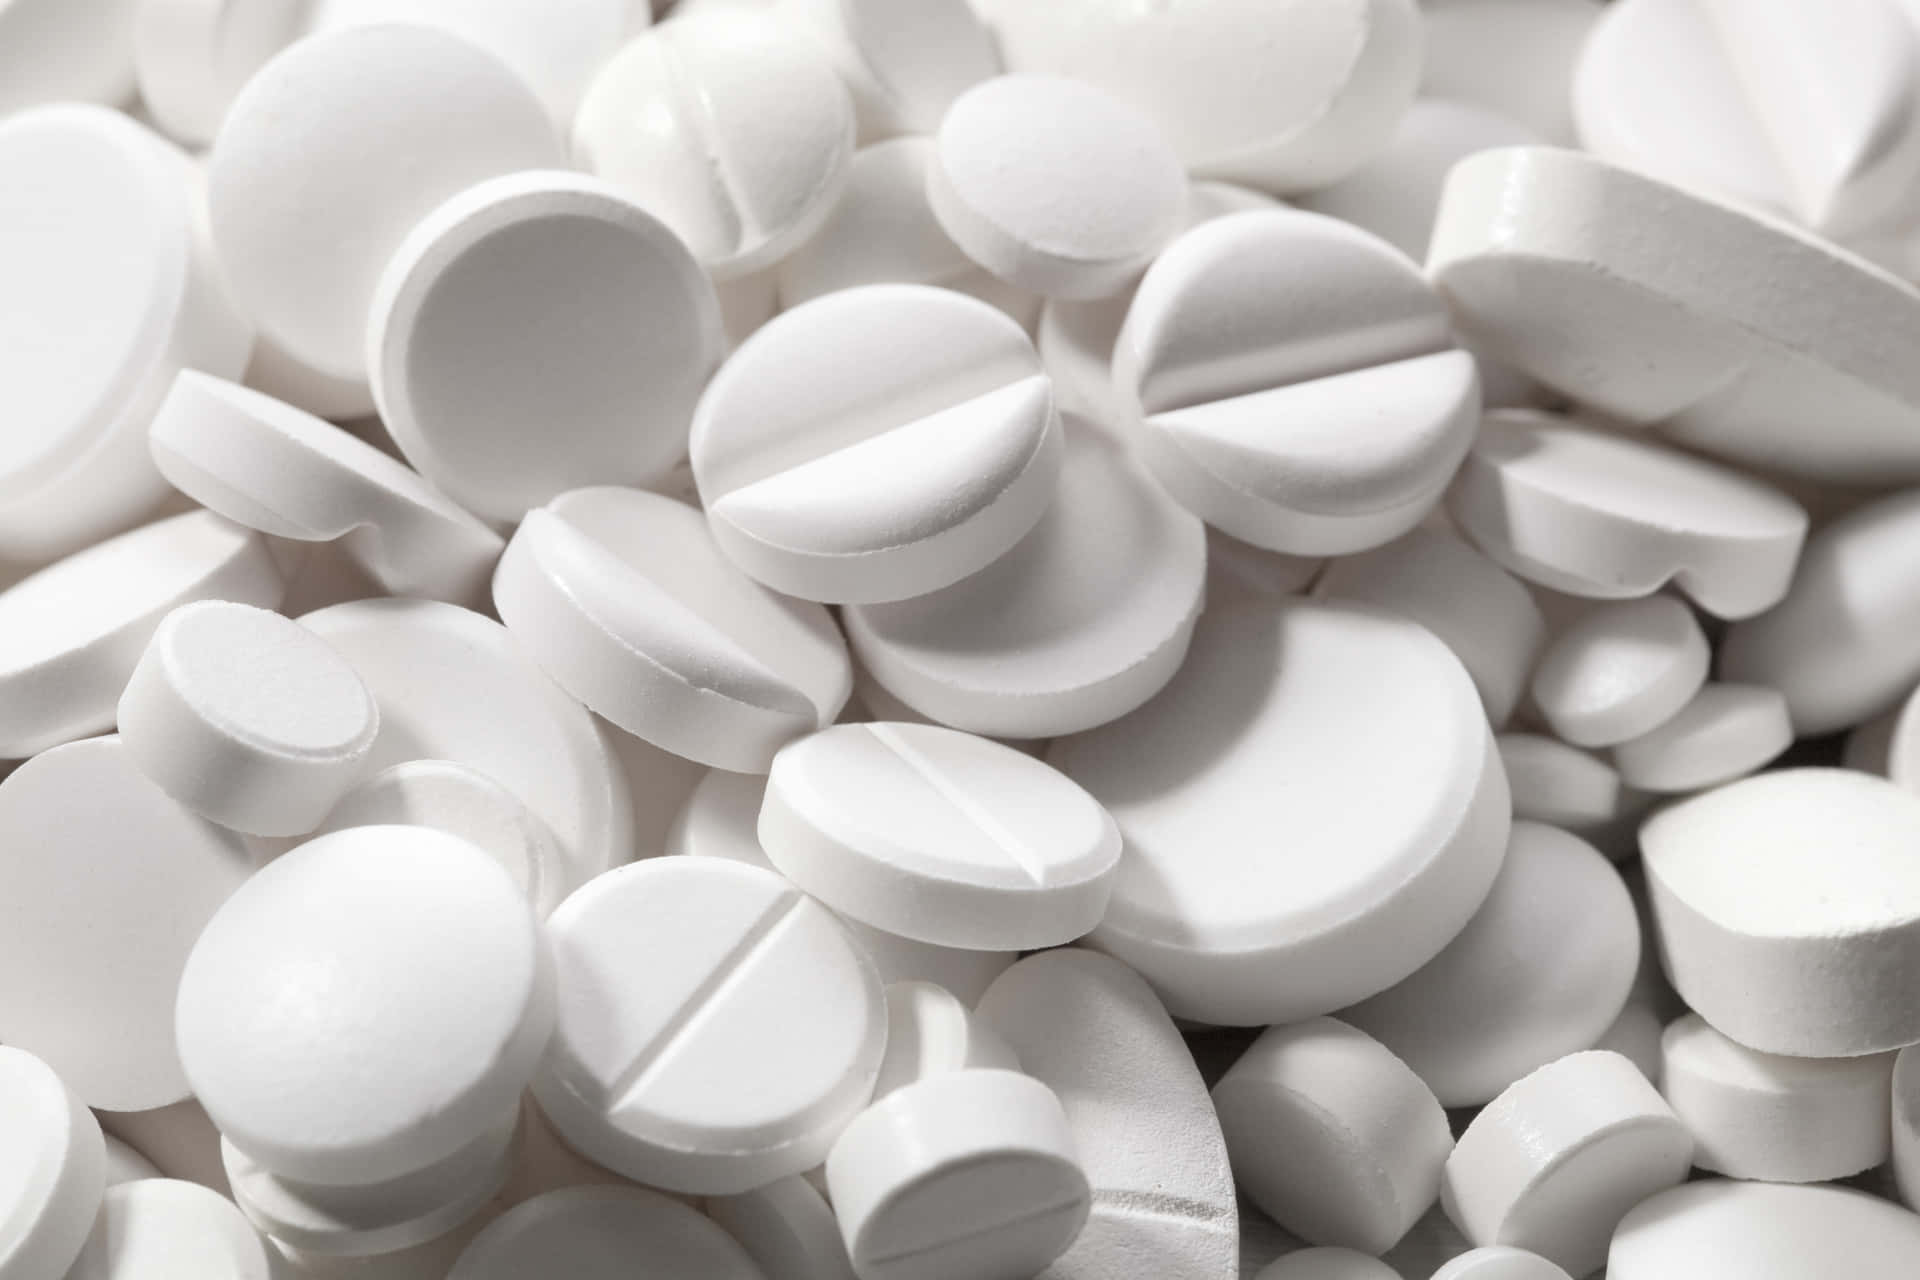 Imagende Medicamento Tabletas Blancas De Tramadol Y Oxycontin